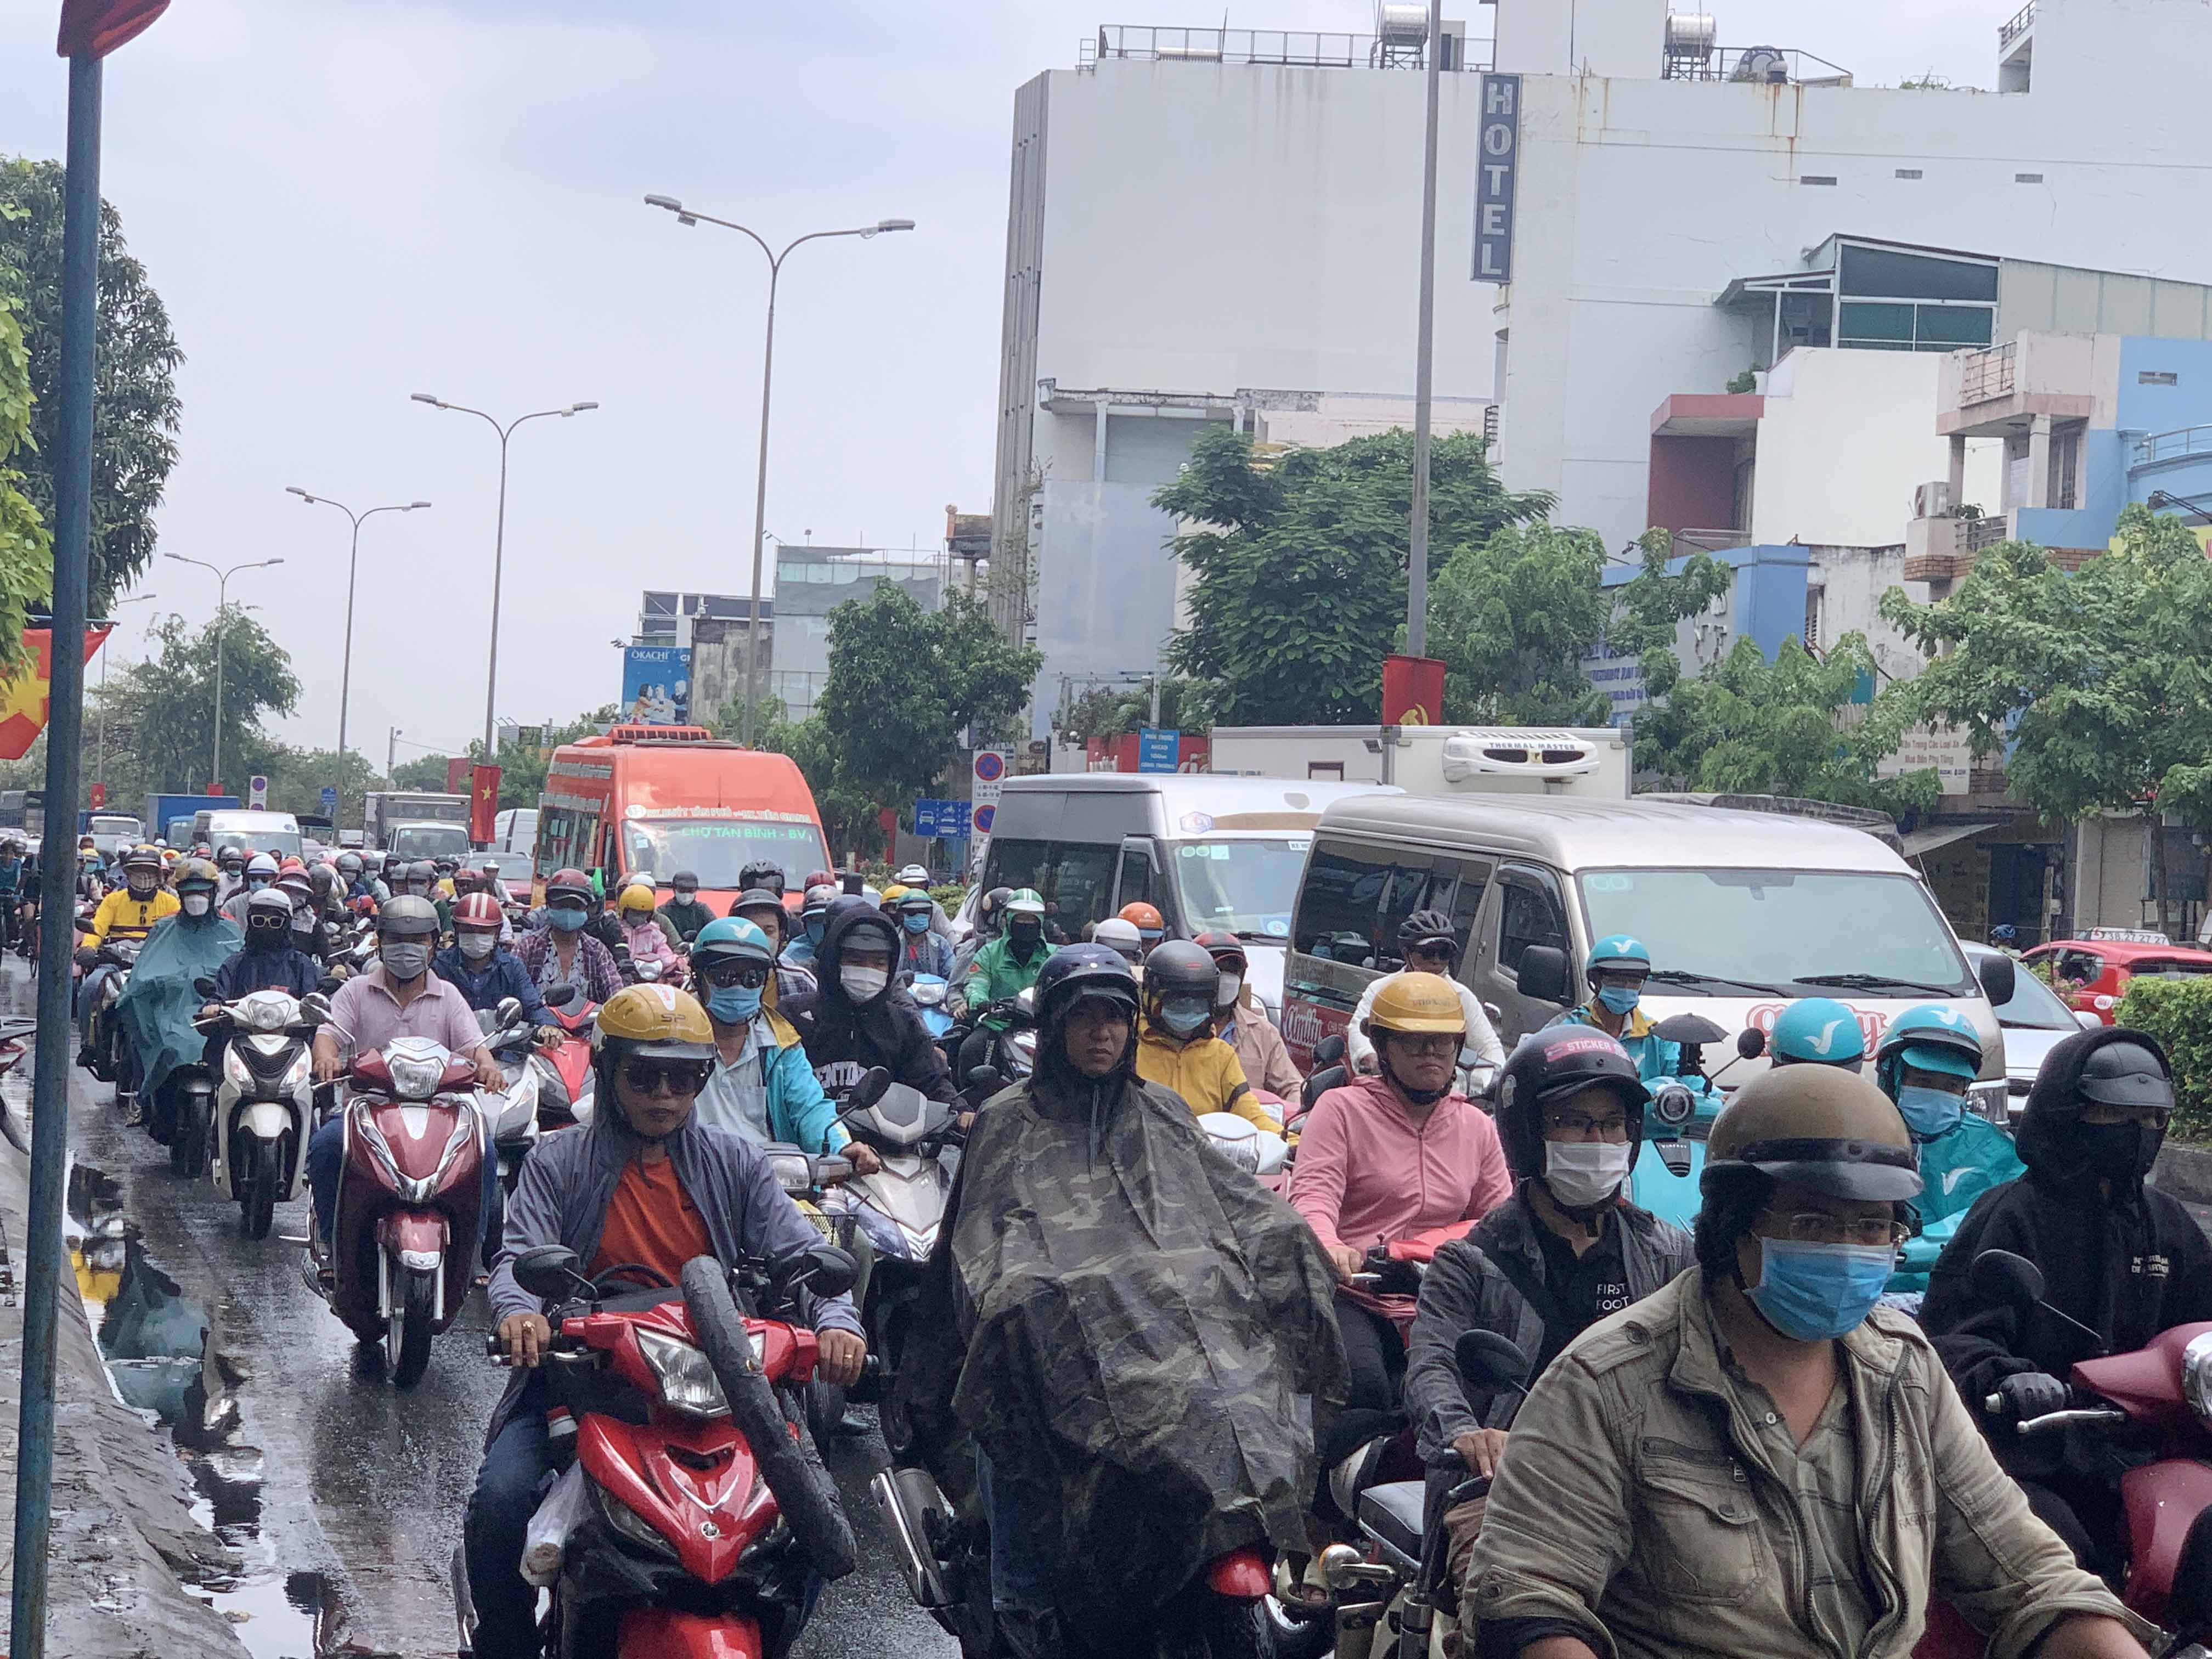 Trưa 4/5, mưa đổ xuống tại nhiều khu vực của TP.HCM. Tại các quận Tân Phú, Tân Bình mưa kéo dài khoảng 5 phút, giúp xua tan không khí ngột ngạt, oi bức những ngày qua. Tuy nhiên, mưa cũng khiến giao thông nhiều tuyến đường bị ùn ứ.